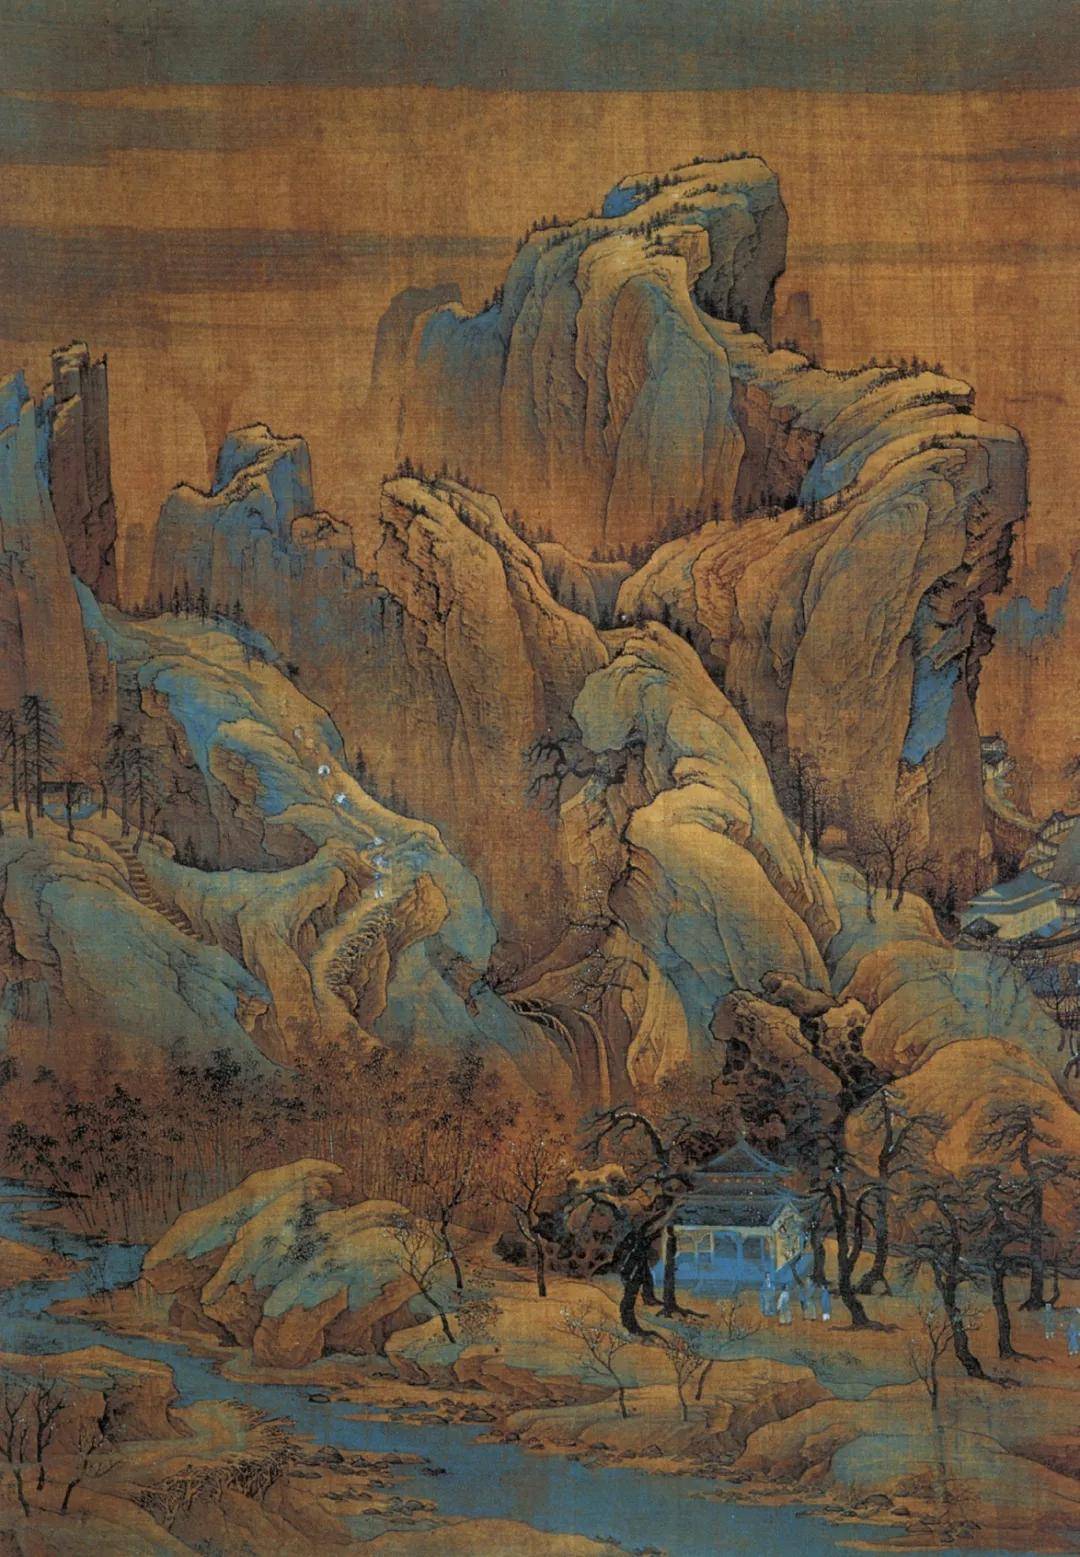 中国古代名画山水画作品范宽溪山行旅图赏析